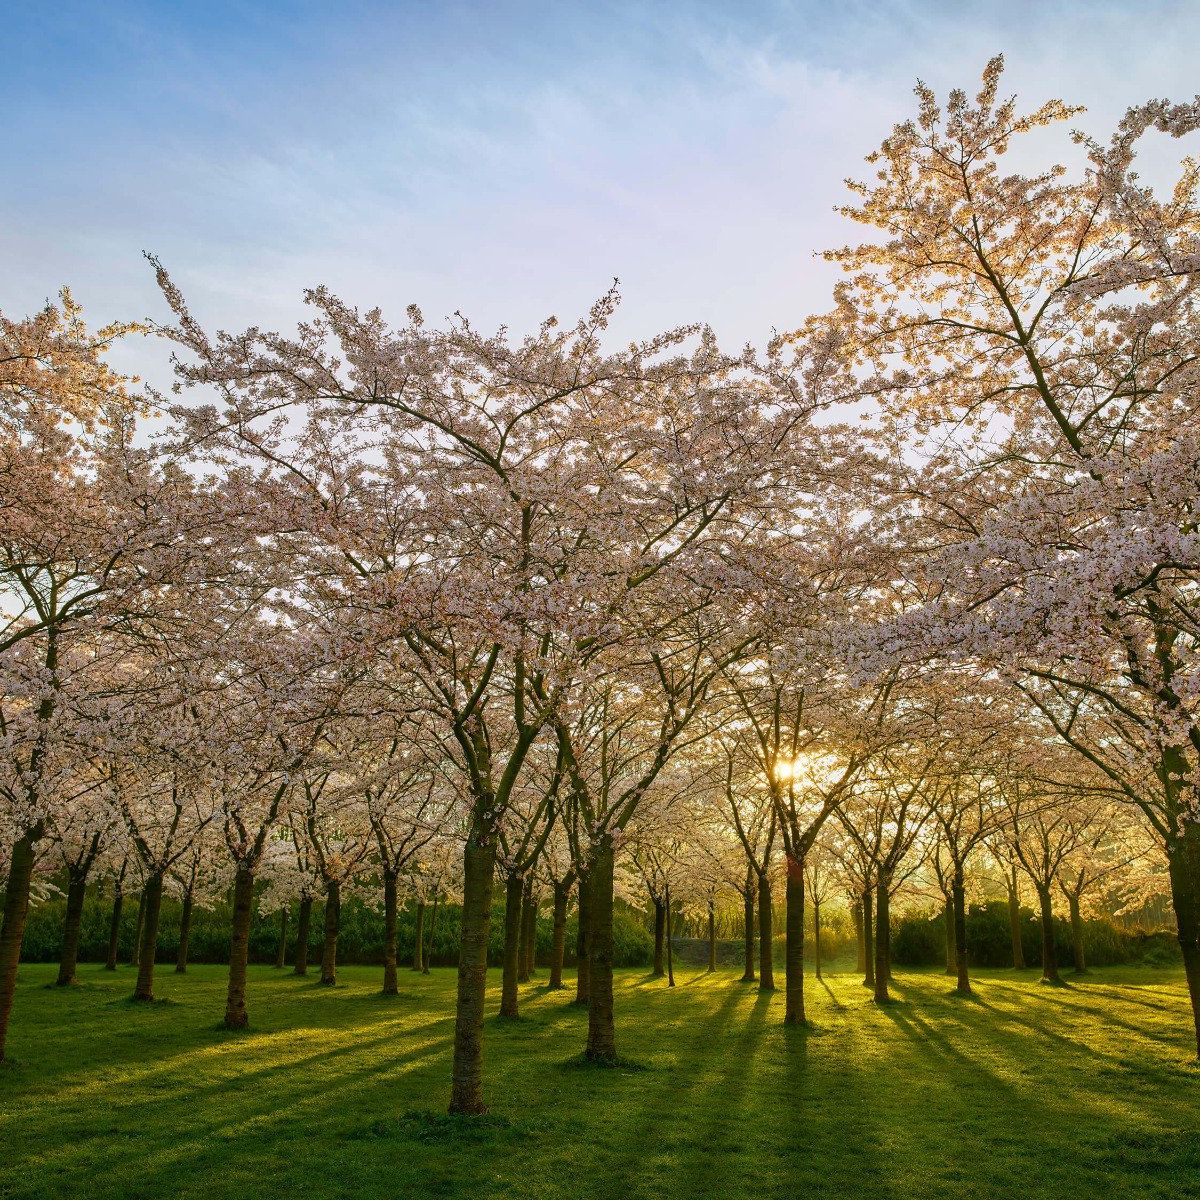 Flowering blossom trees